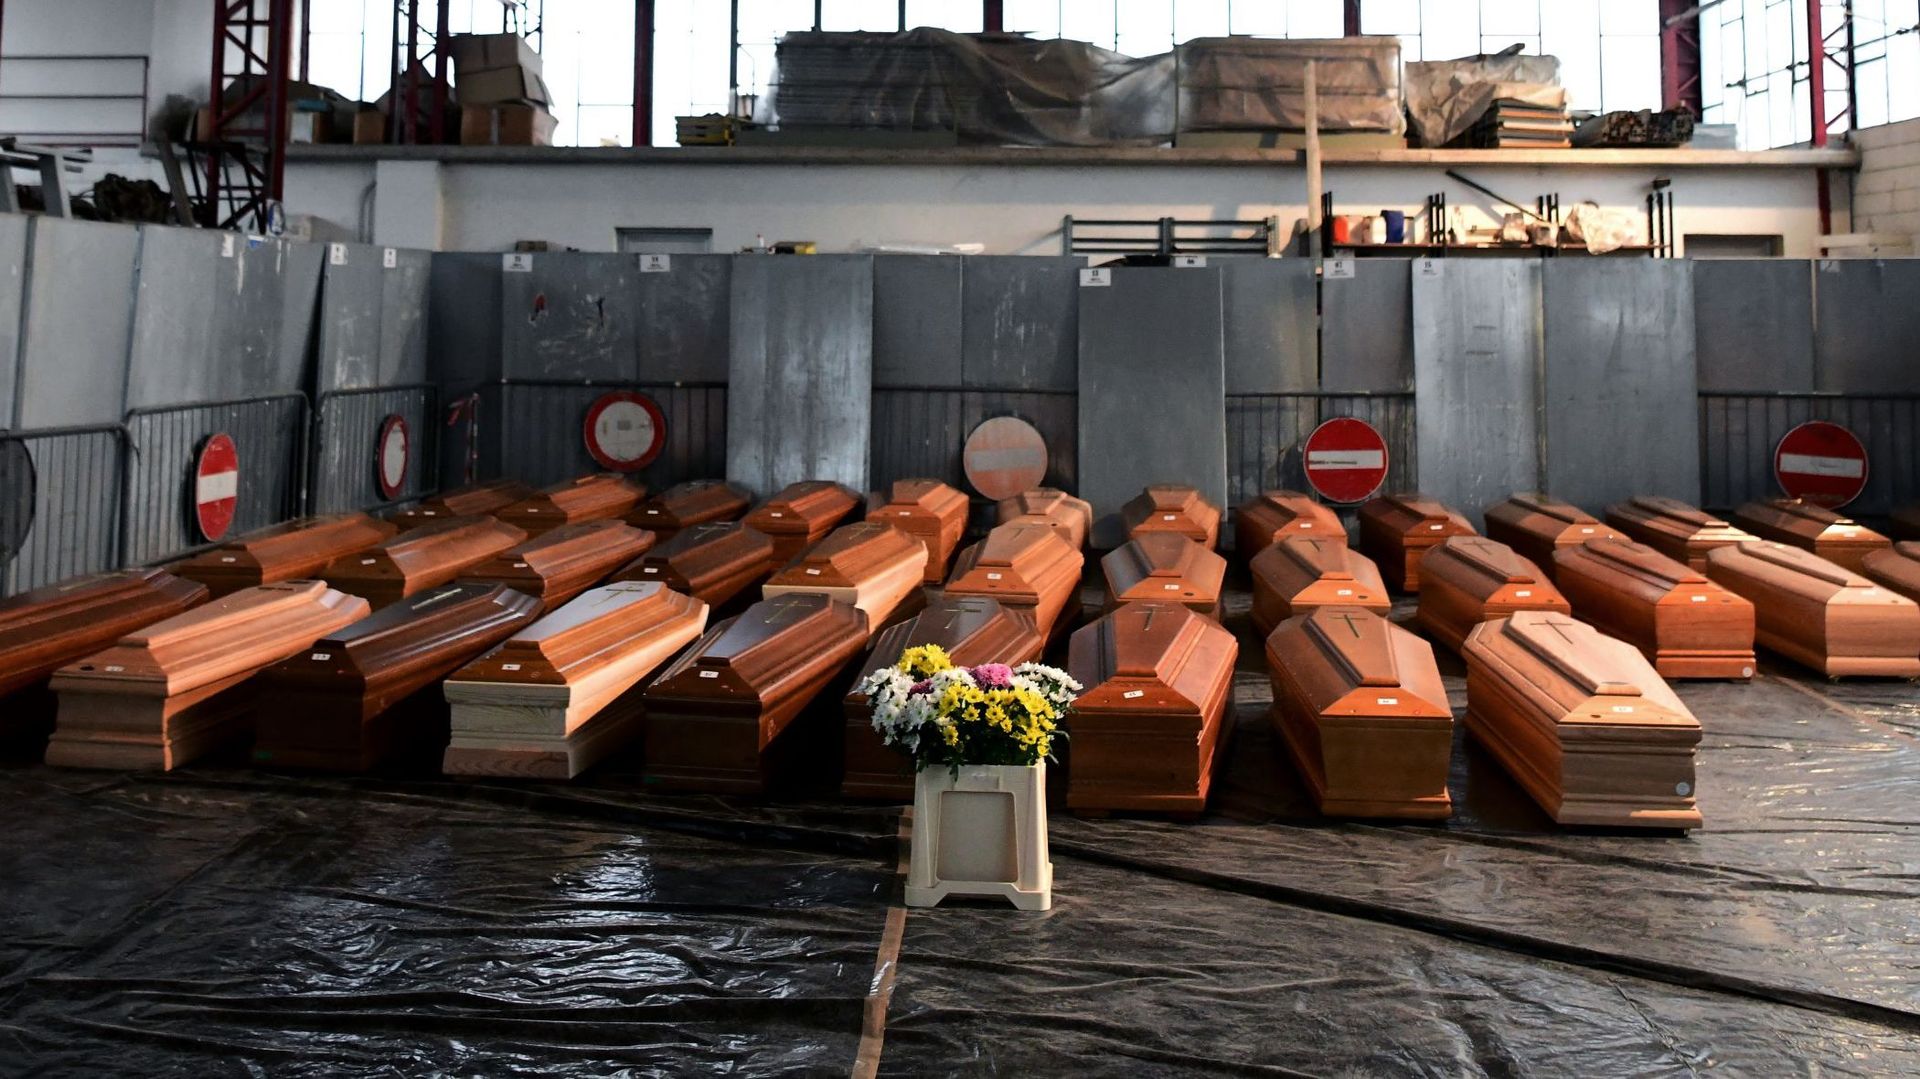 35 cercueils de personnes décédées stockés dans un entrepôt à Ponte San Pietro, près de Bergame, en Lombardie avant d’être transportés dans une autre région pour être incinérés, alors que l’Italie subit de plein fouet la pandémie du COVID-19.